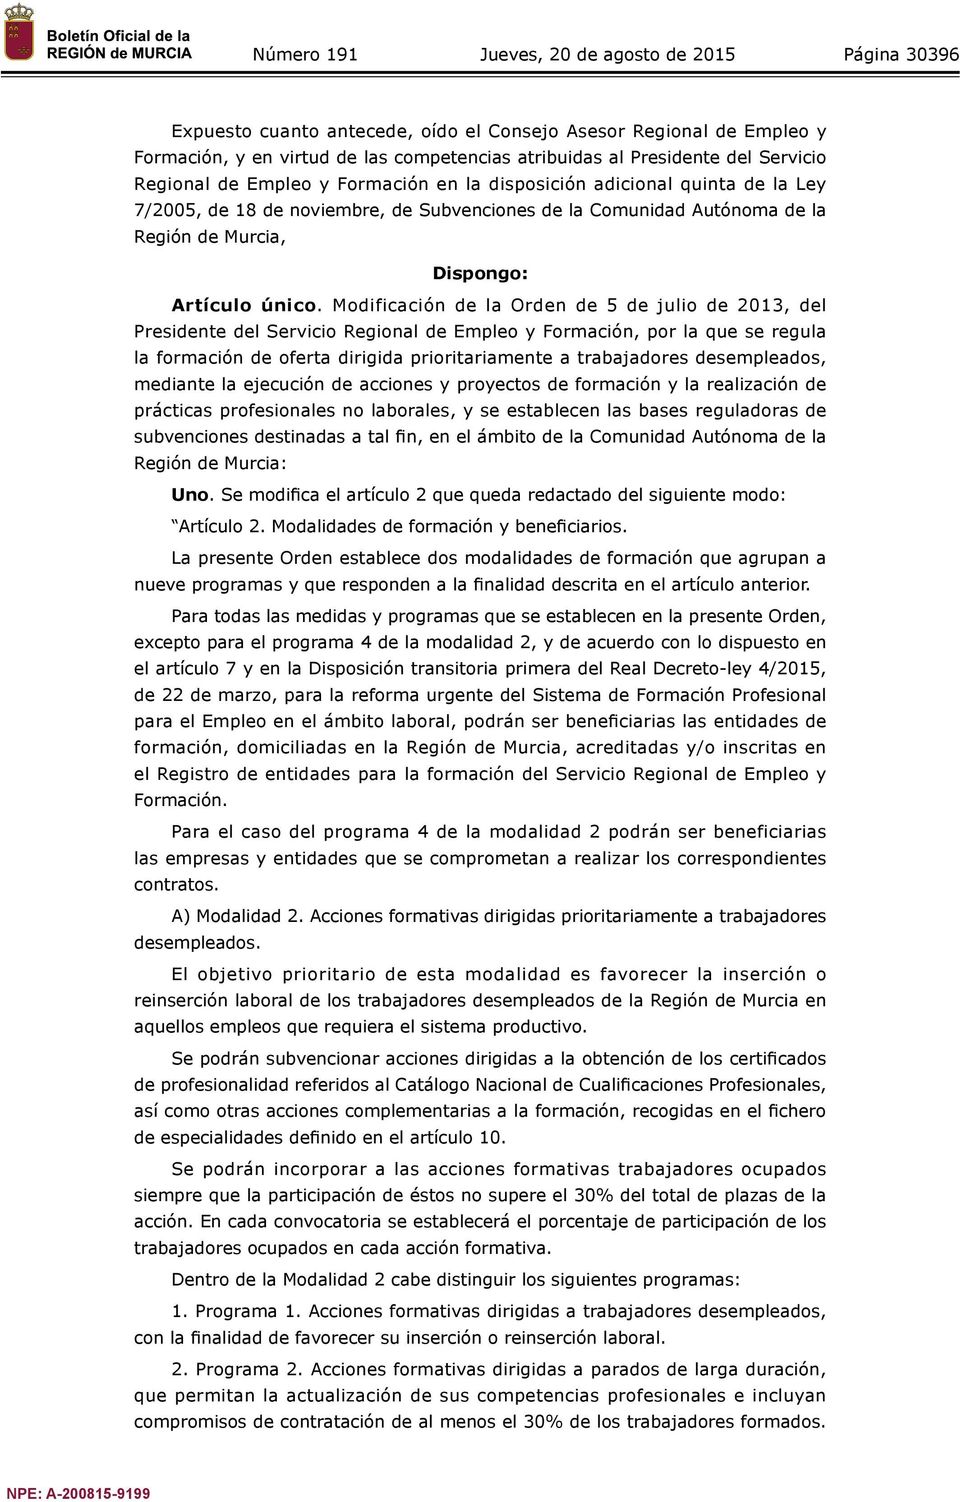 Modificación de la Orden de 5 de julio de 2013, del Presidente del Servicio Regional de Empleo y Formación, por la que se regula la formación de oferta dirigida prioritariamente a trabajadores